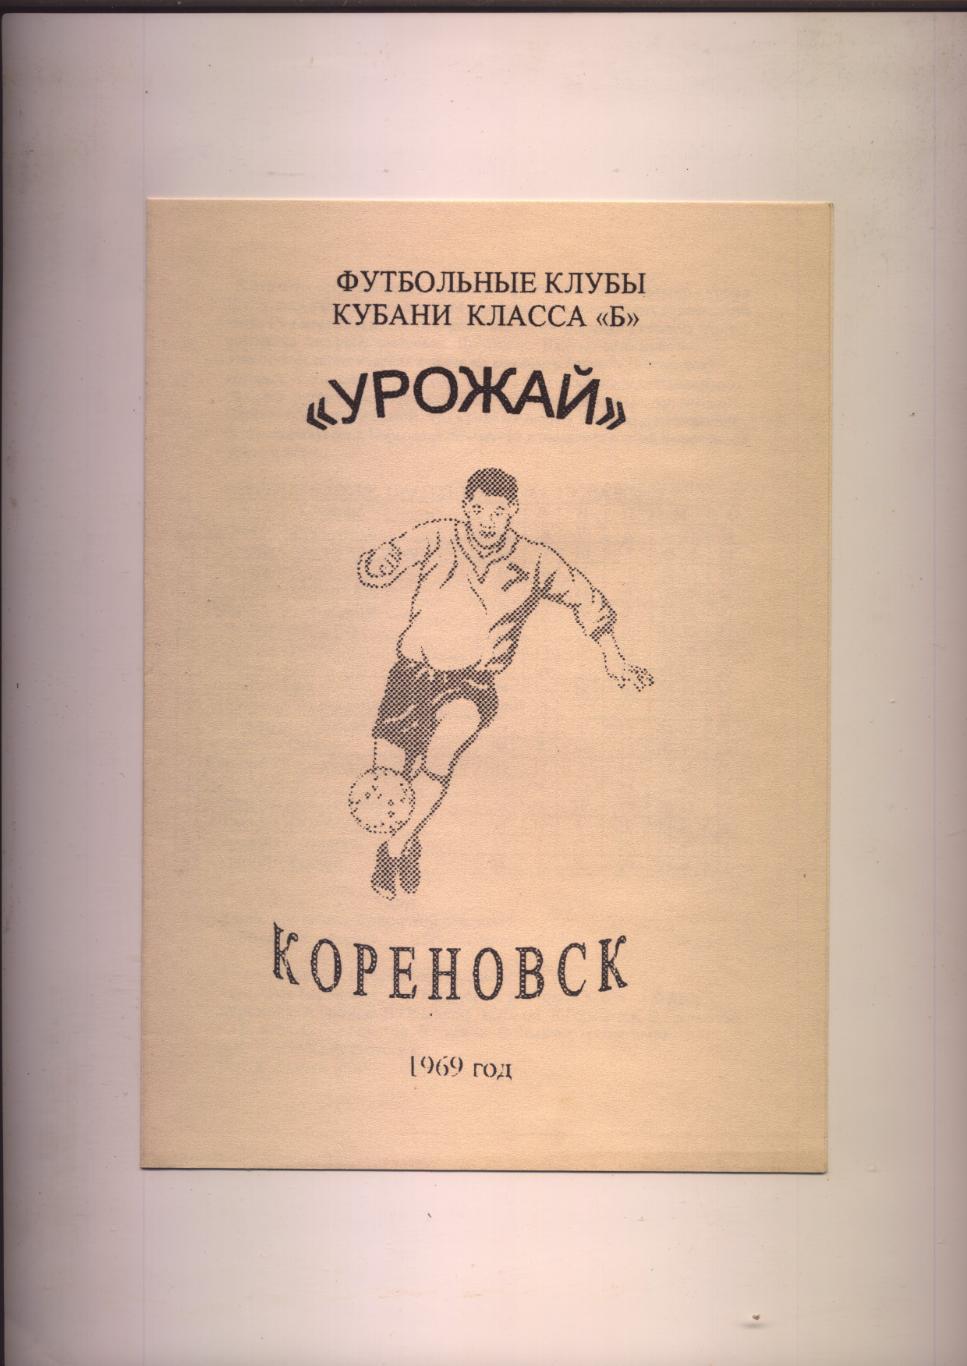 К/С Футбольные клубы Кубани класса Б. Урожай Кореновск 1969 год.